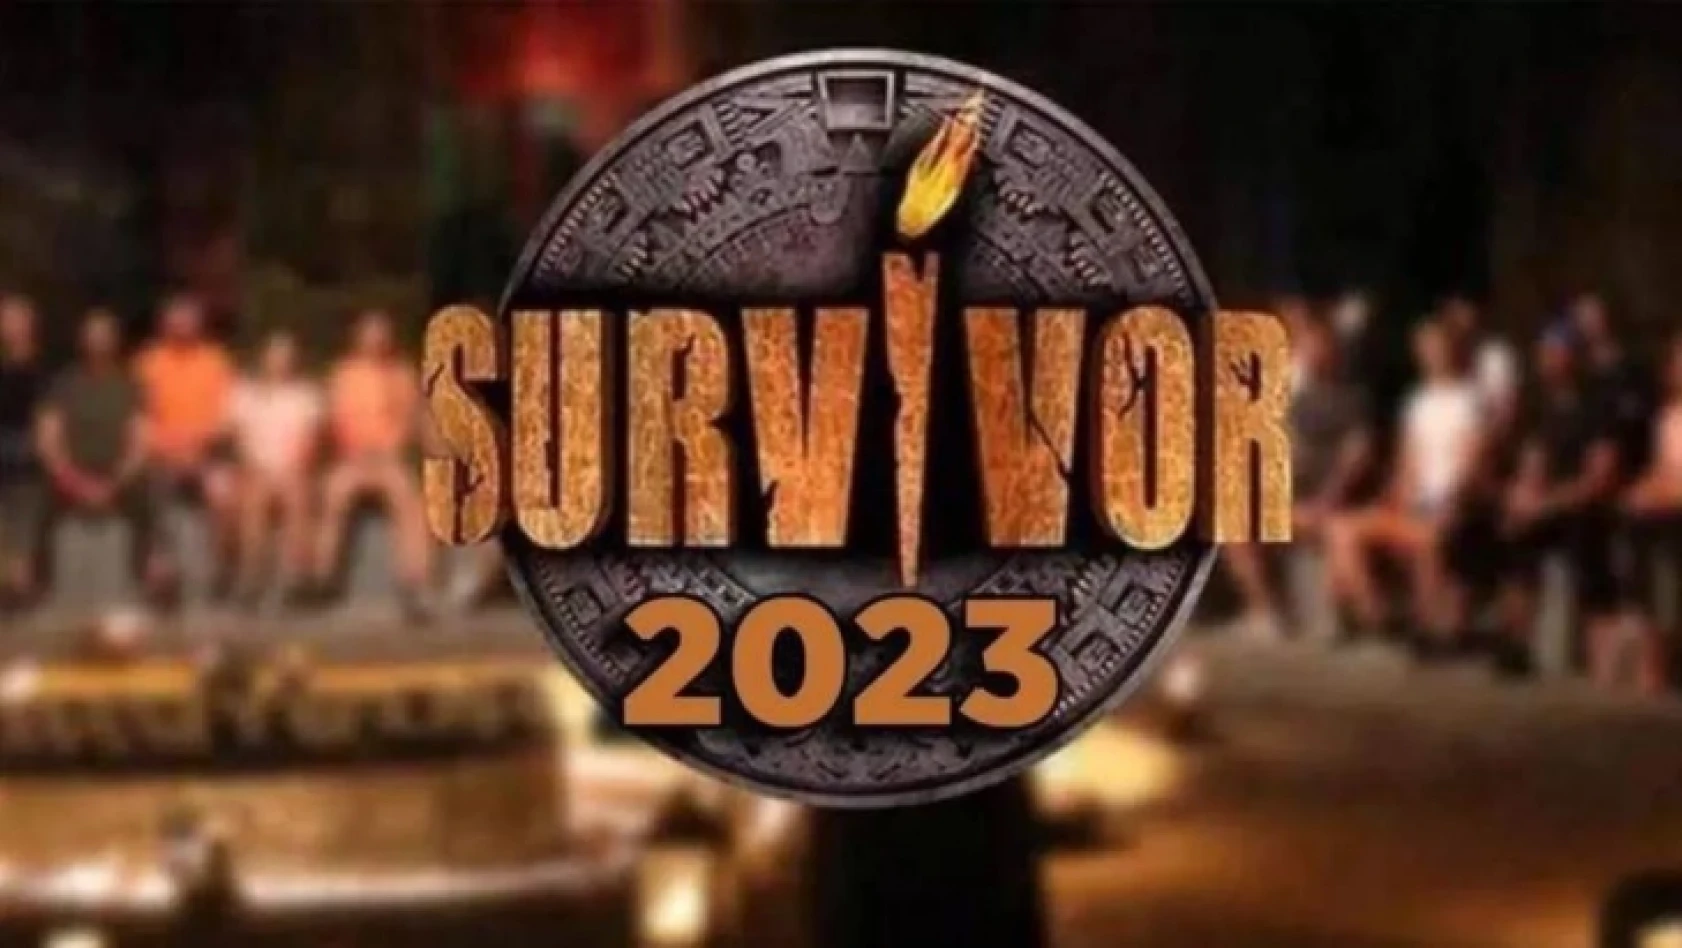 Survivor 2023 finalinin nerede yapılacağı belli oldu